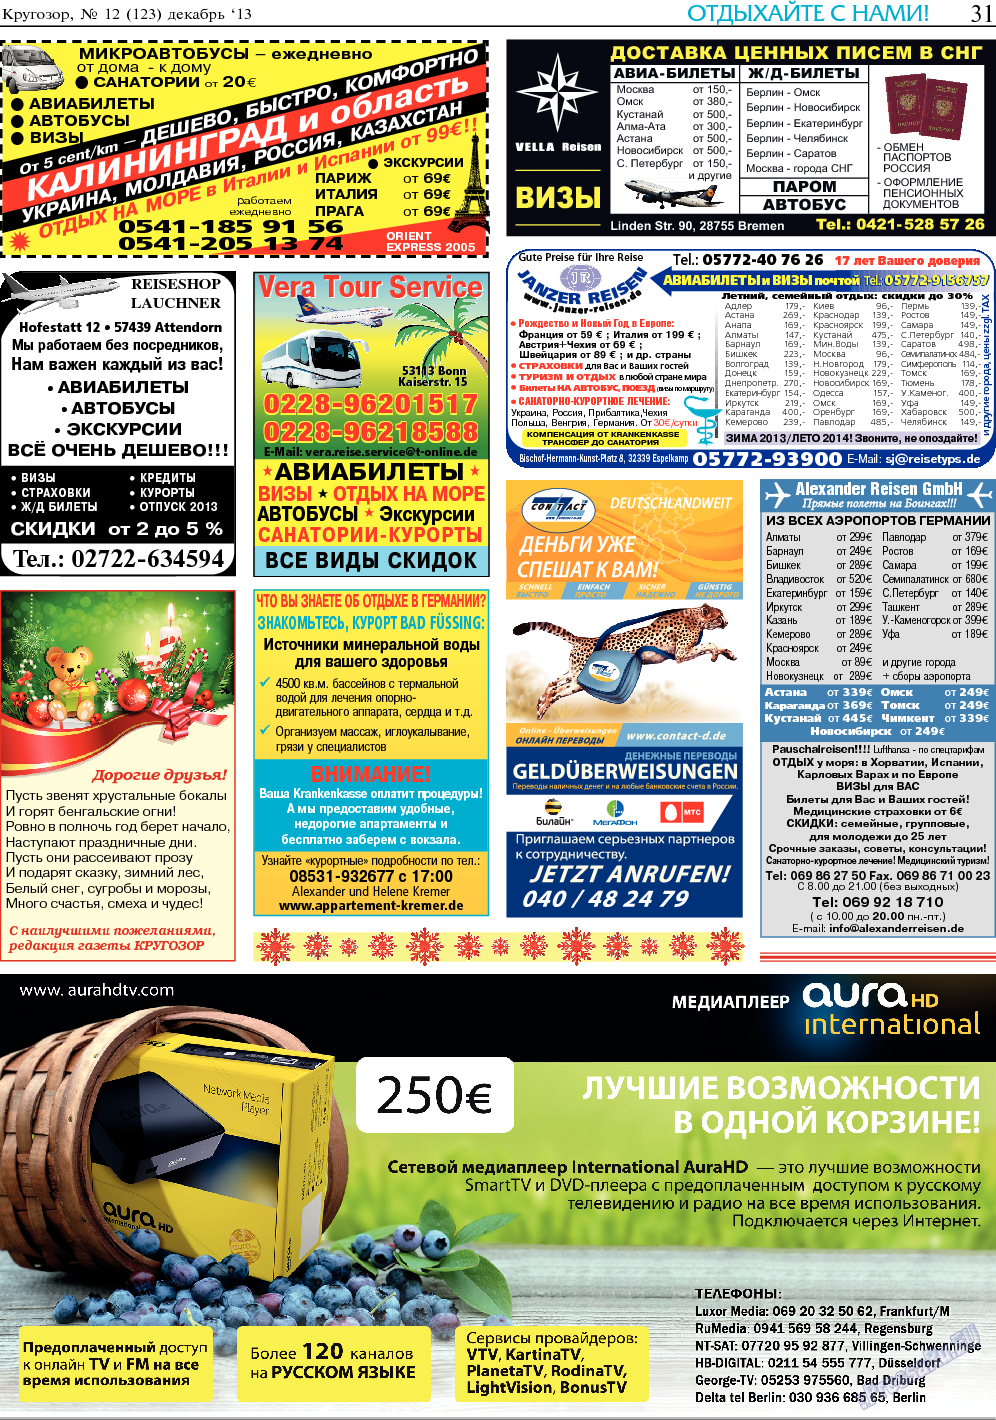 Кругозор, газета. 2013 №12 стр.31